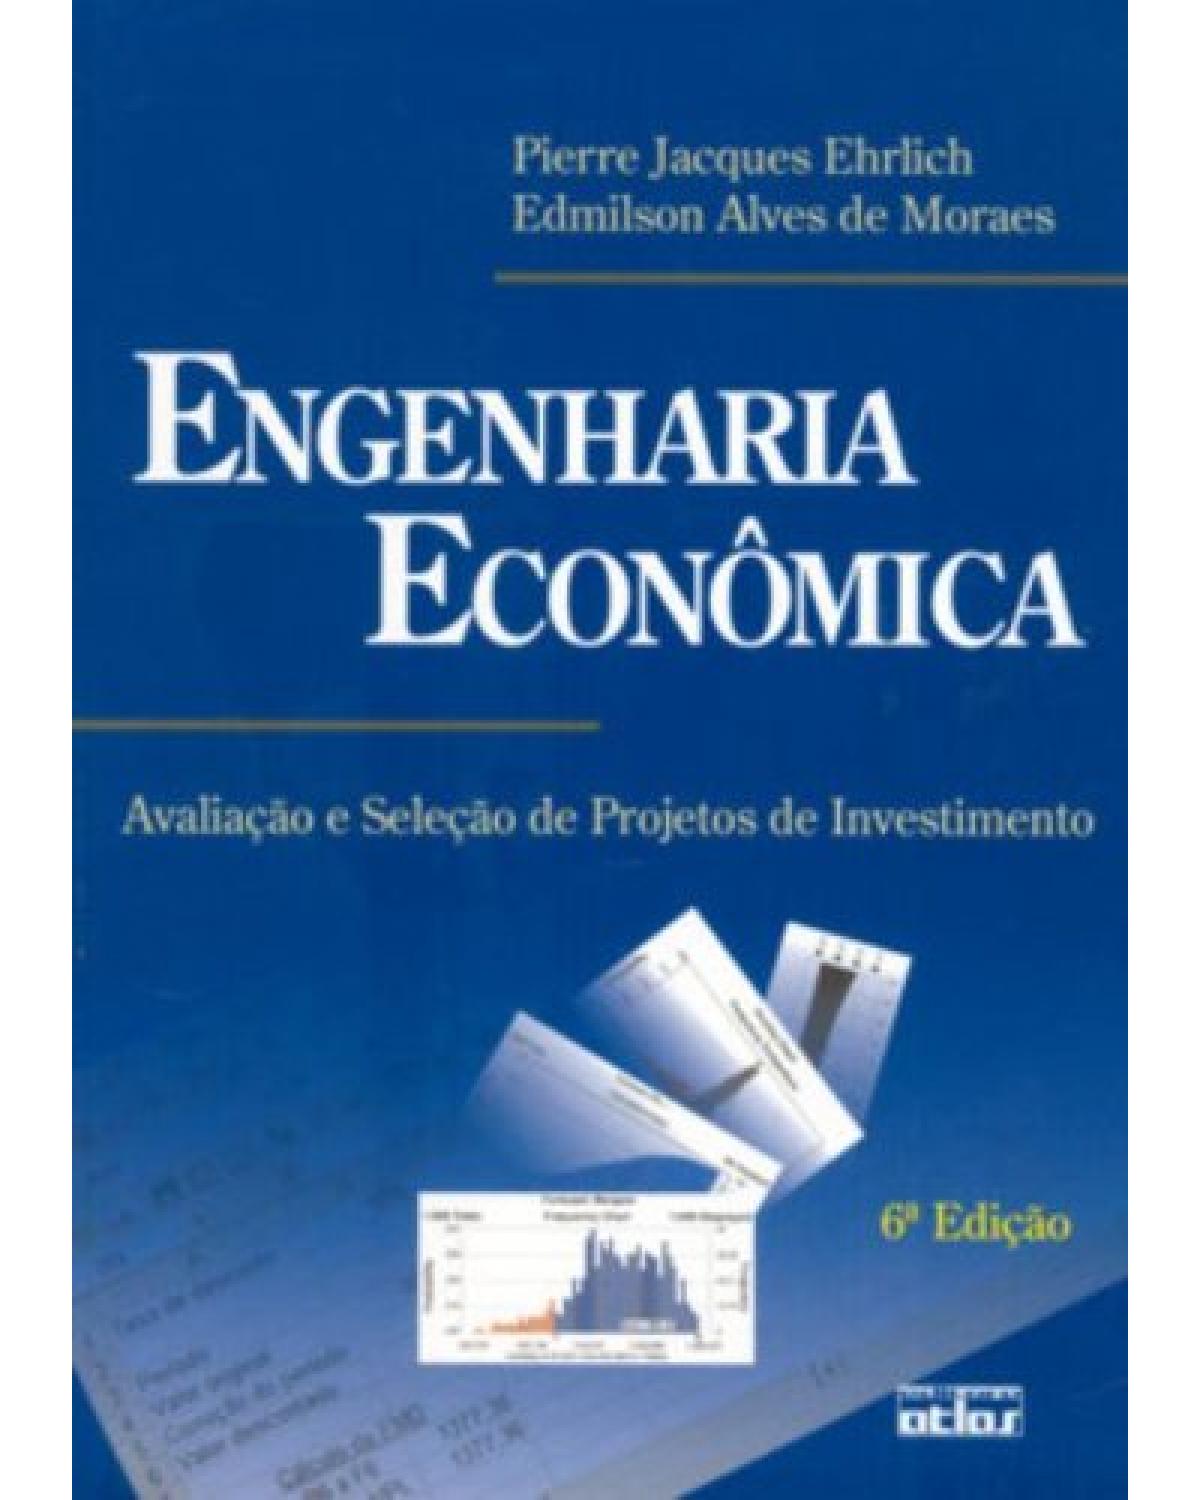 Engenharia econômica - Avaliação e seleção de projetos de investimento - 6ª Edição | 2005